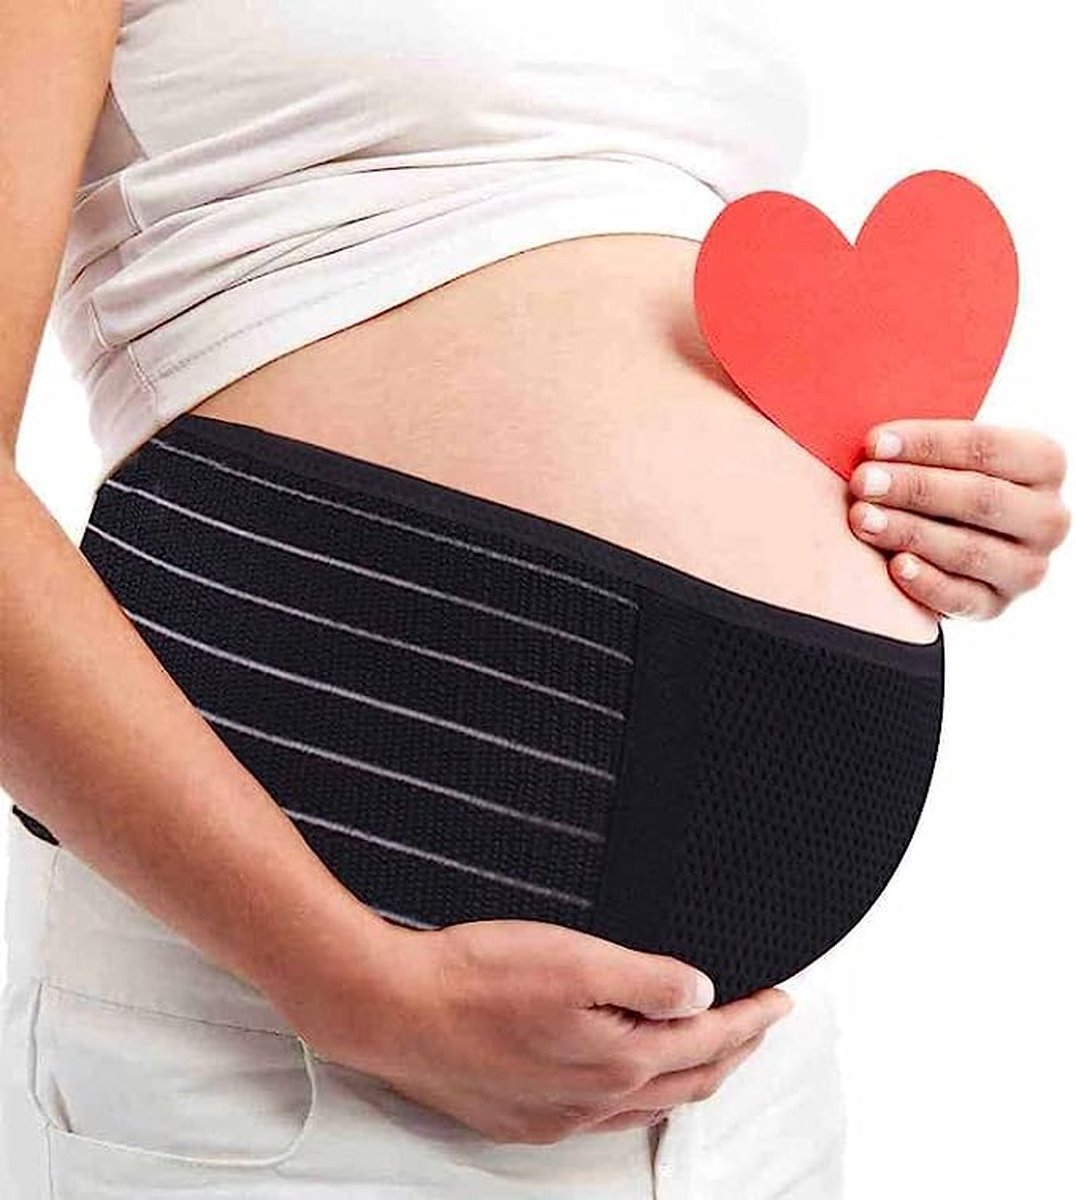 Zwangerschapsgordel voor zwangerschap, ondersteuning van taille en buik, ademend, comfortabel, verstelbaar, ter verlichting van rugpijn/bekkenpijn